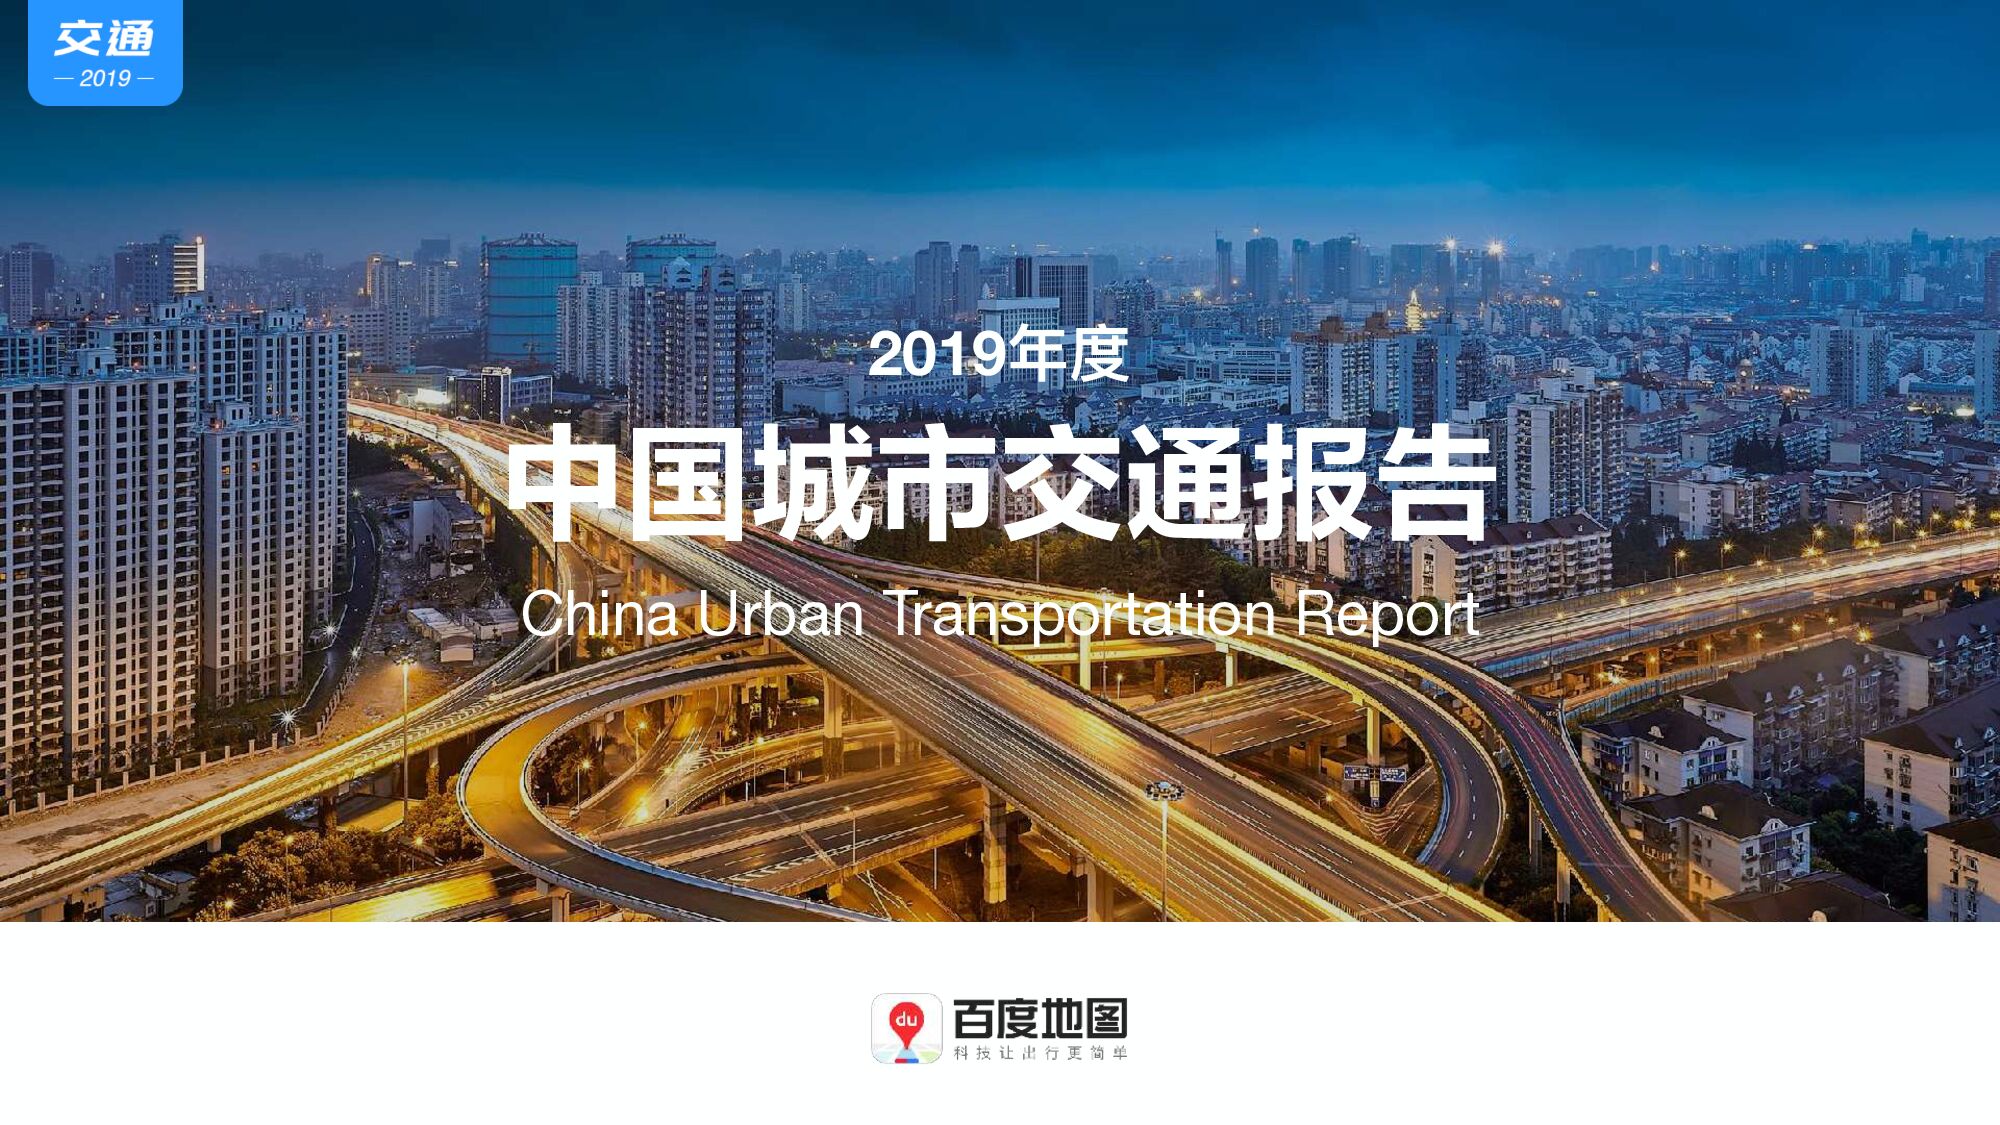 【交通行业】2019年度中国城市交通报告 附下载